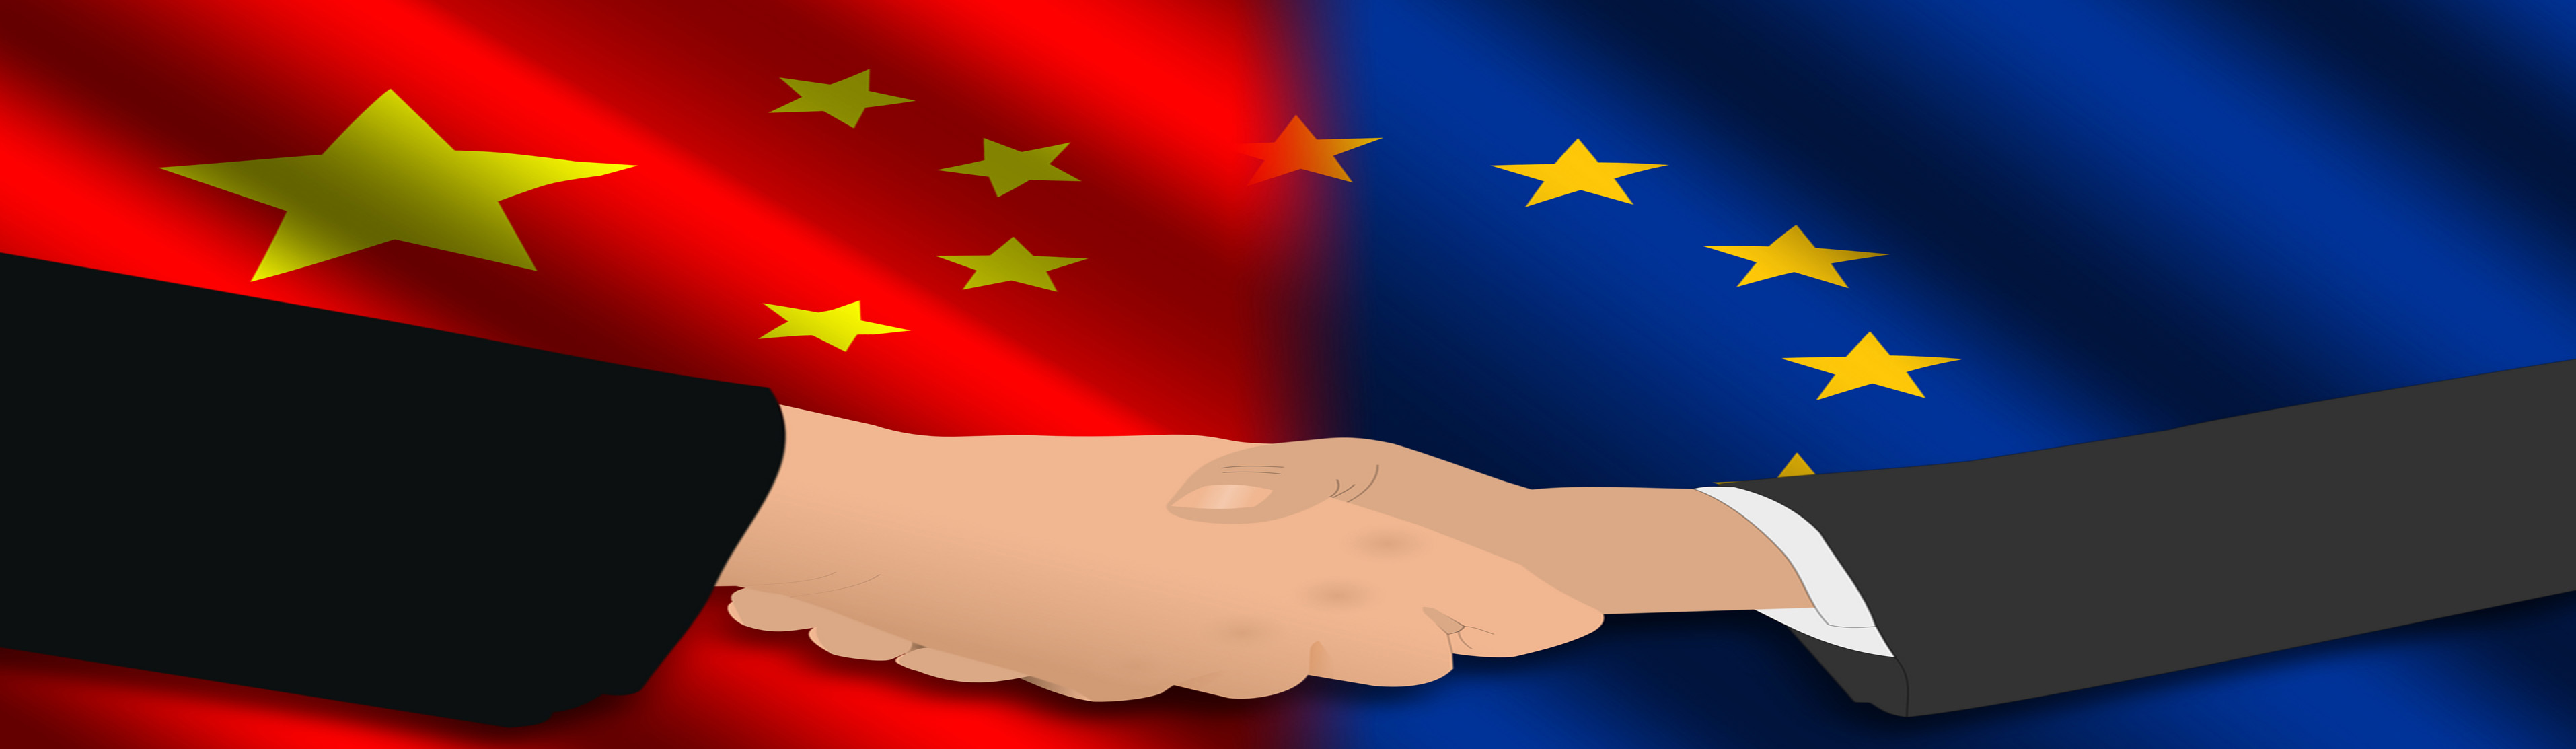 China-Europe-20160713193612